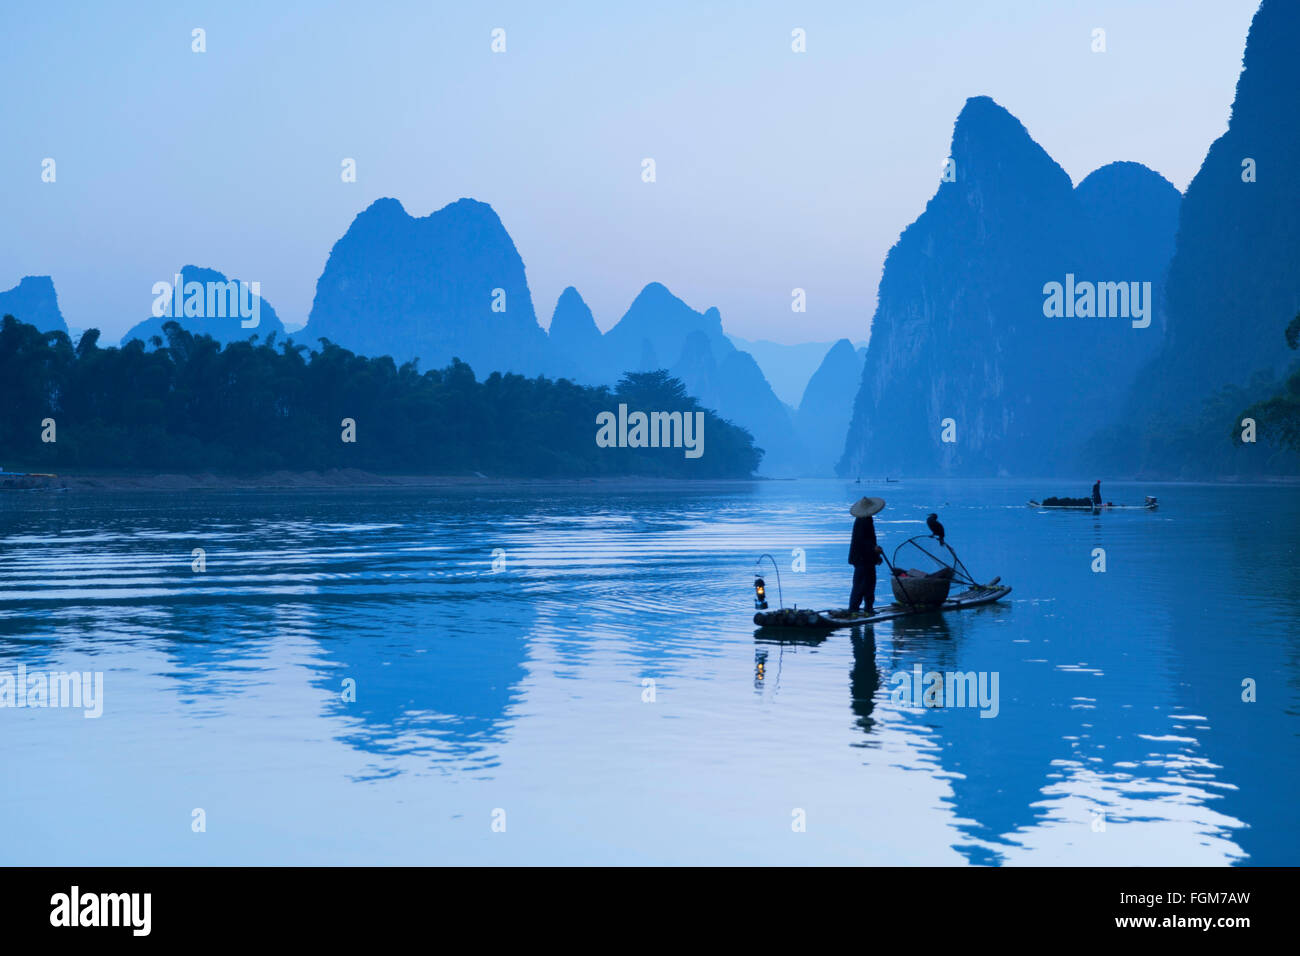 Cormorant fisherman on Li River at dawn, Xingping, Yangshuo, Guangxi, China Stock Photo